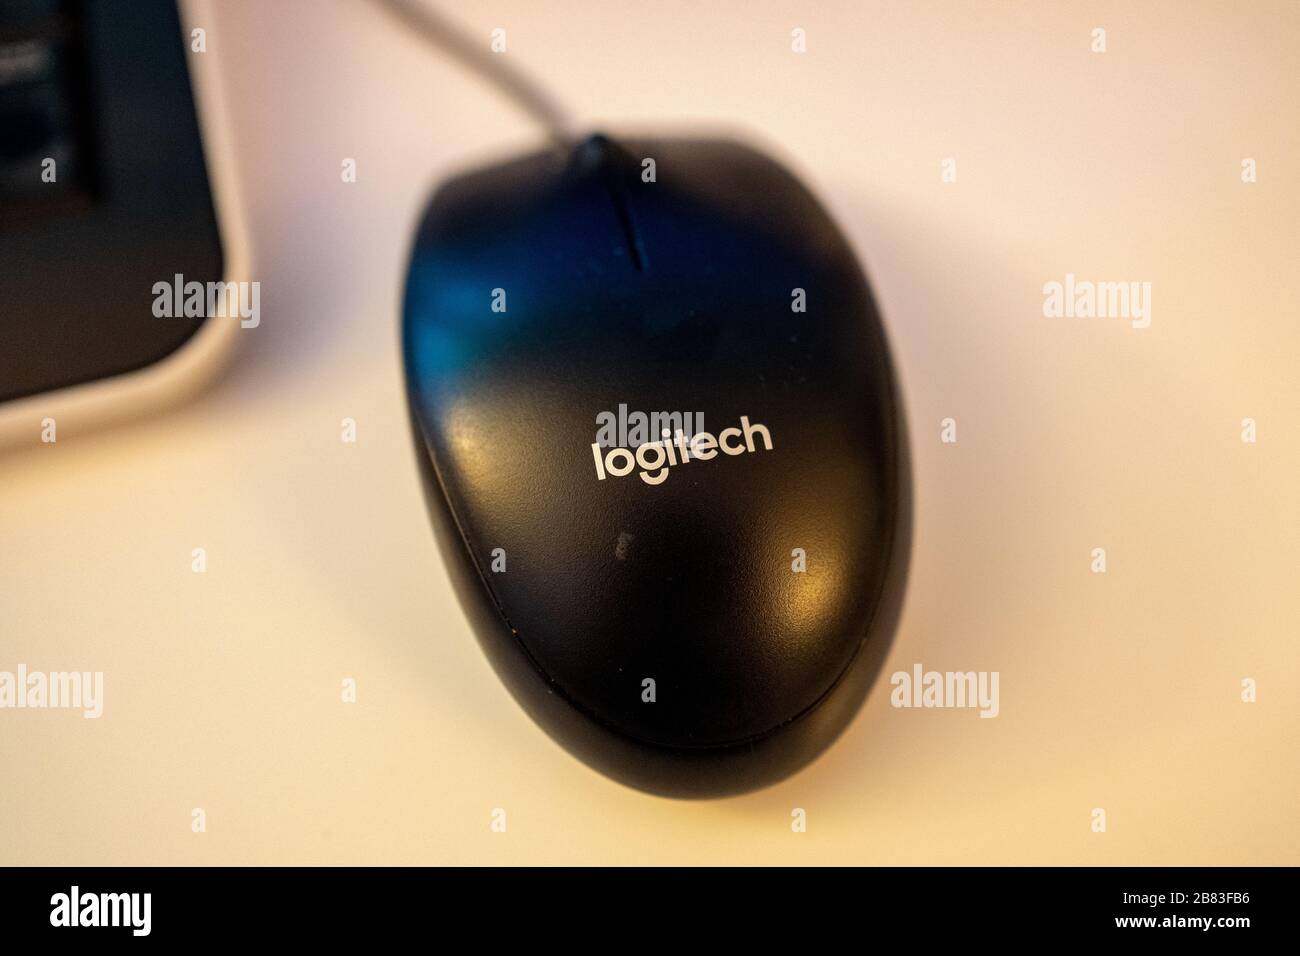 Gros plan du logo de la société de matériel informatique Logitech sur une souris d'ordinateur dans un environnement de bureau, San Ramon, Californie, 7 février 2020. () Banque D'Images